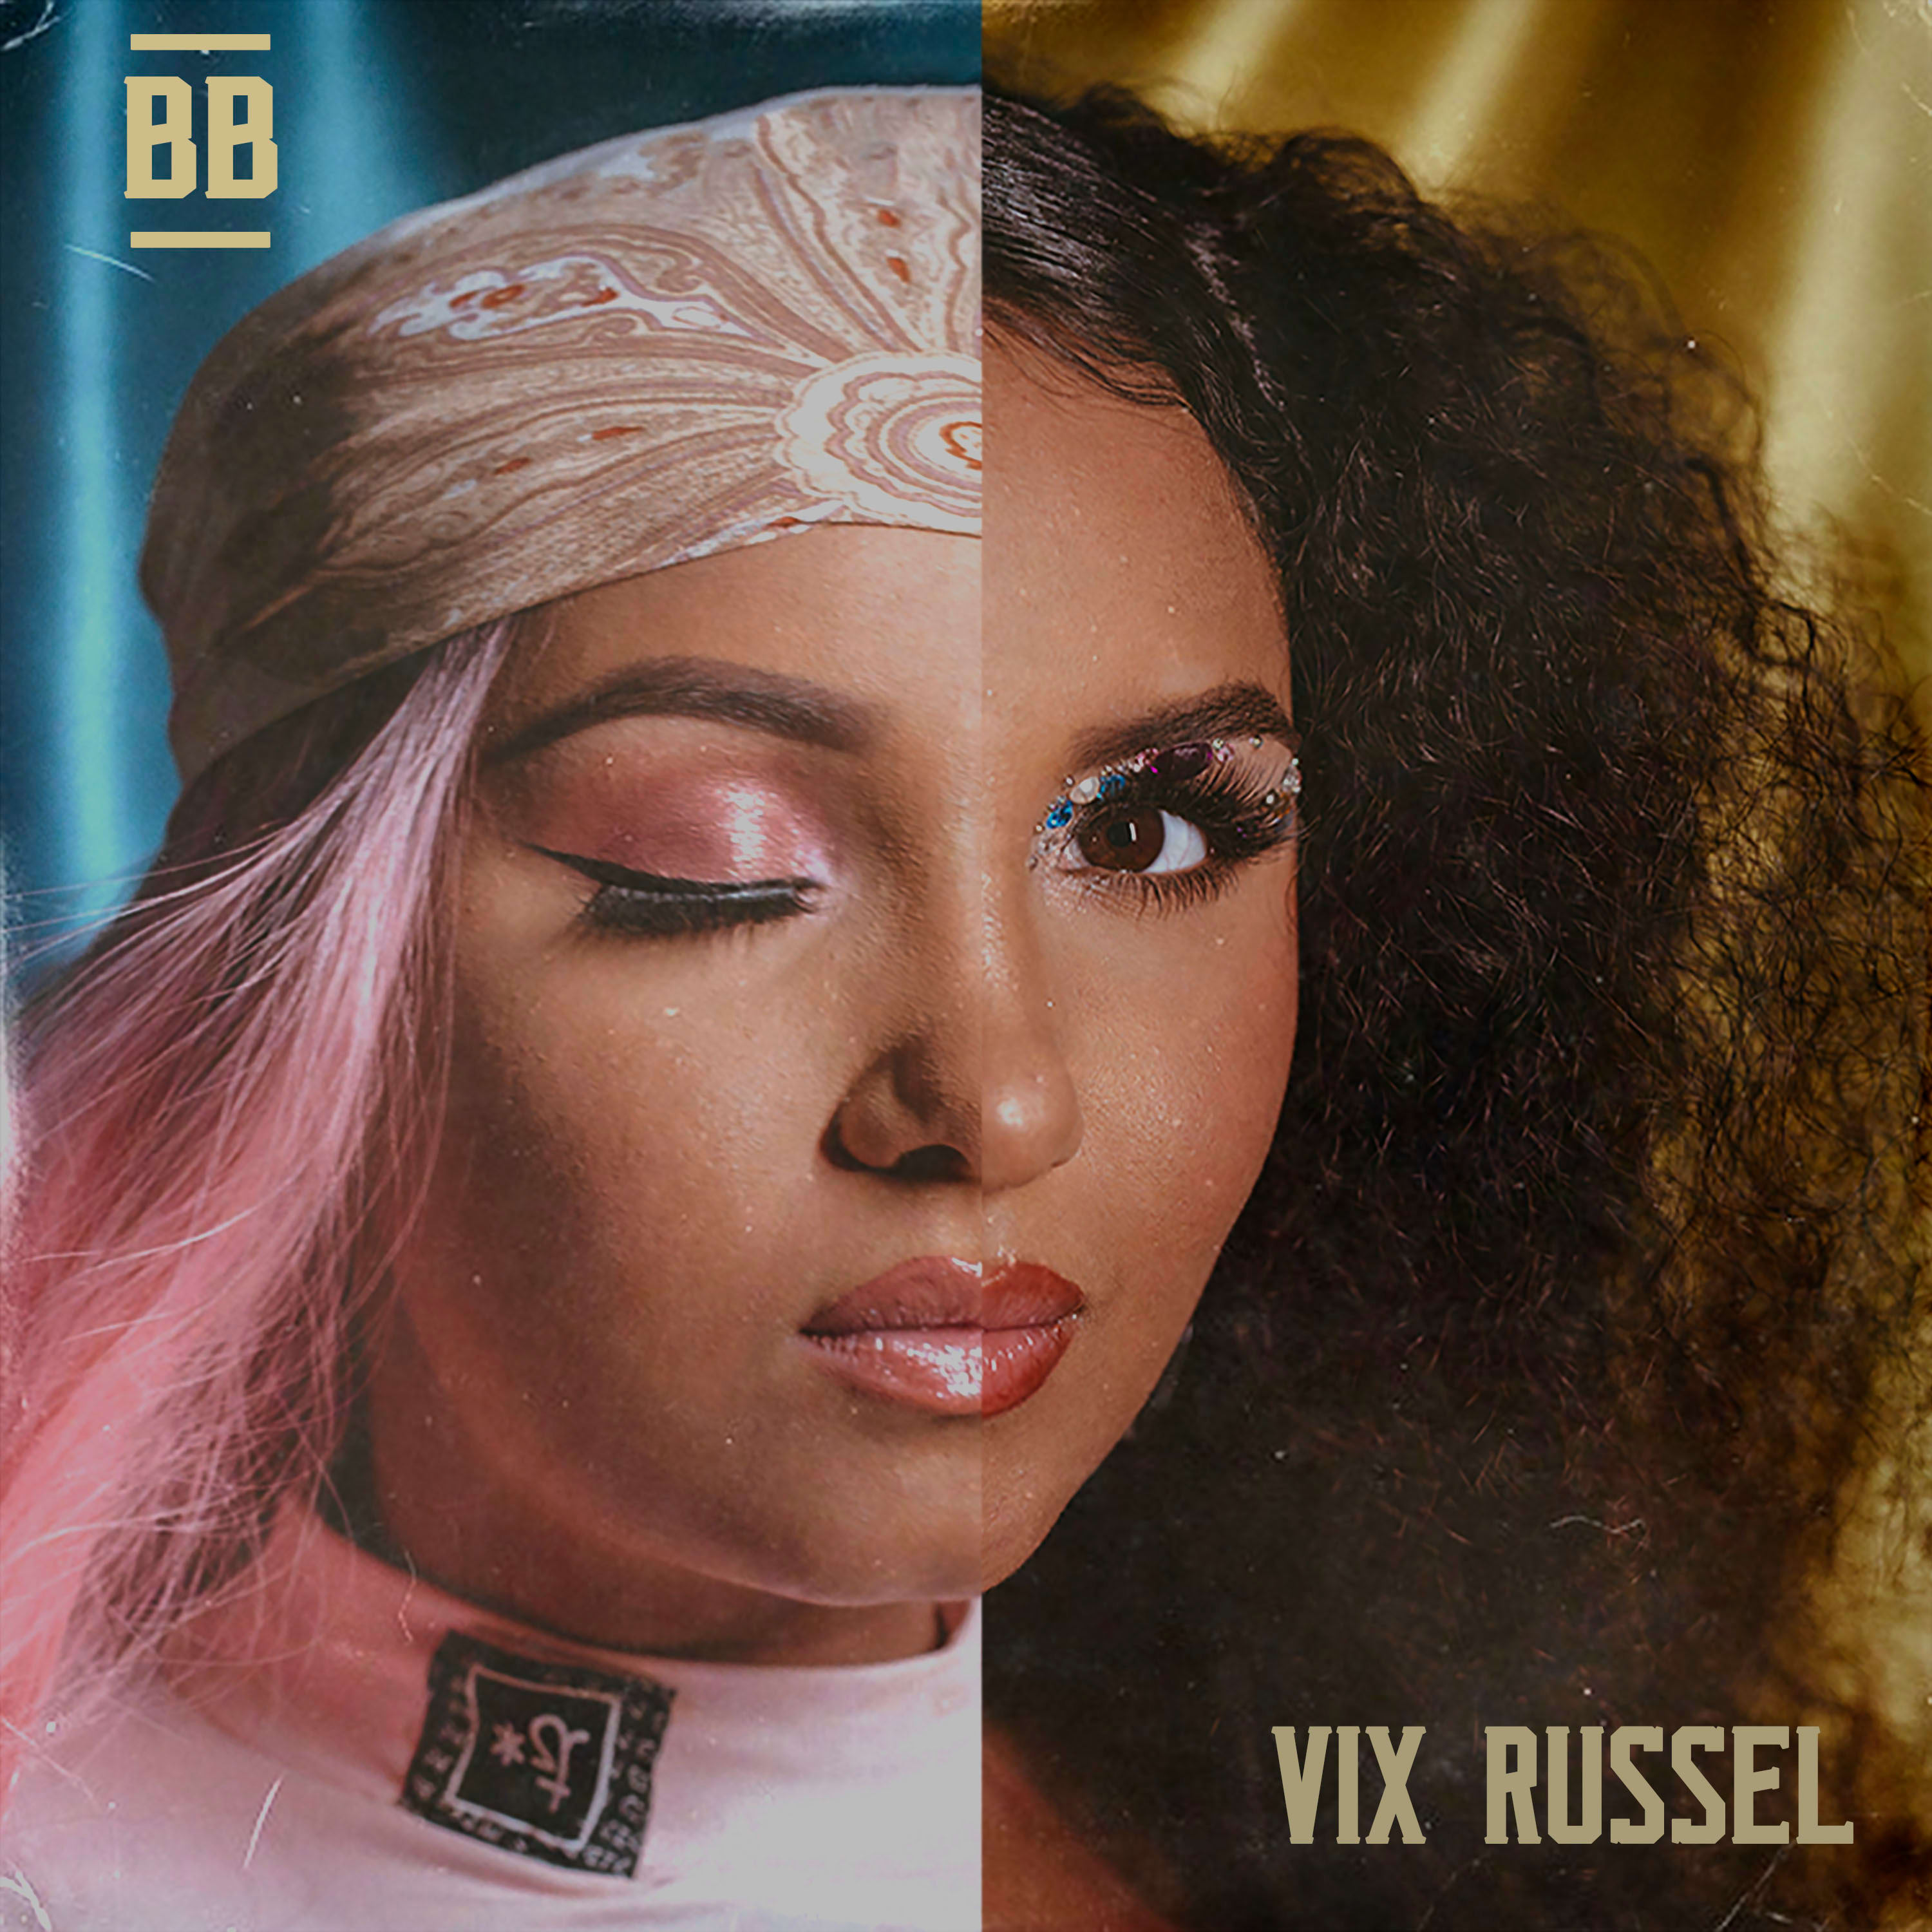 Vem ouvir "BB", o novo EP da Vix Russel